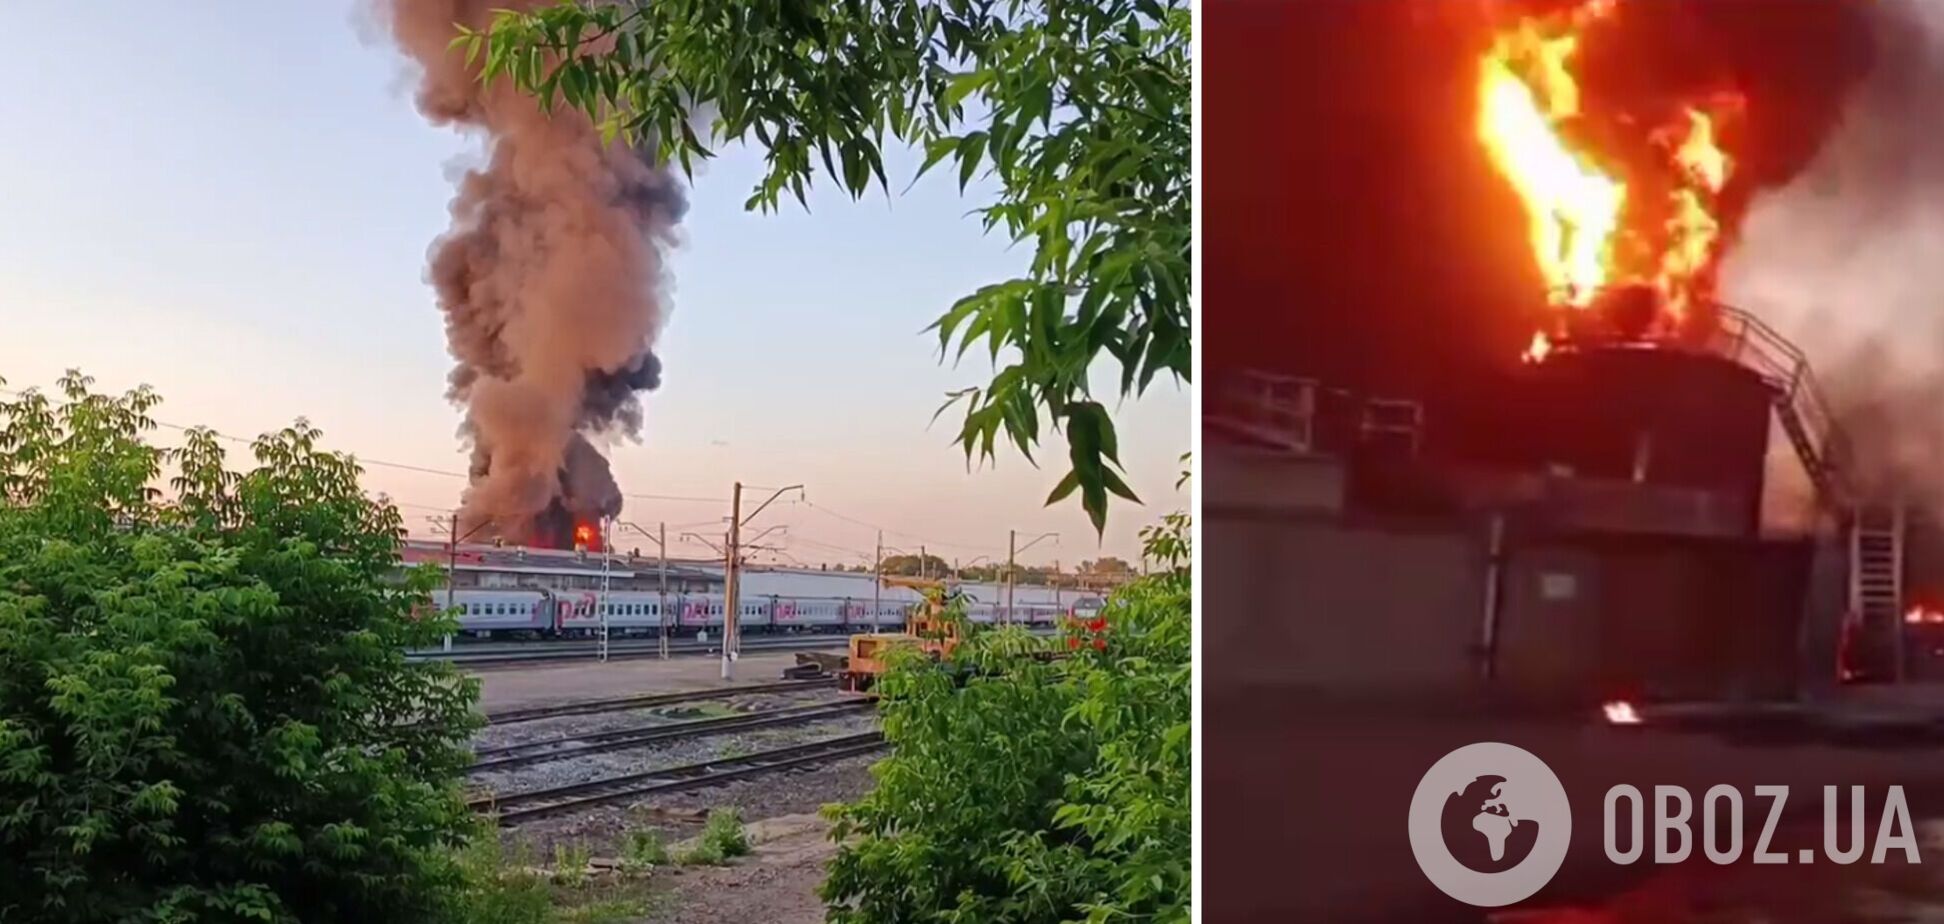 Пожар на железнодорожной станции в российской Уфе: горят цистерны с топливом и склад ГСМ. Фото и видео